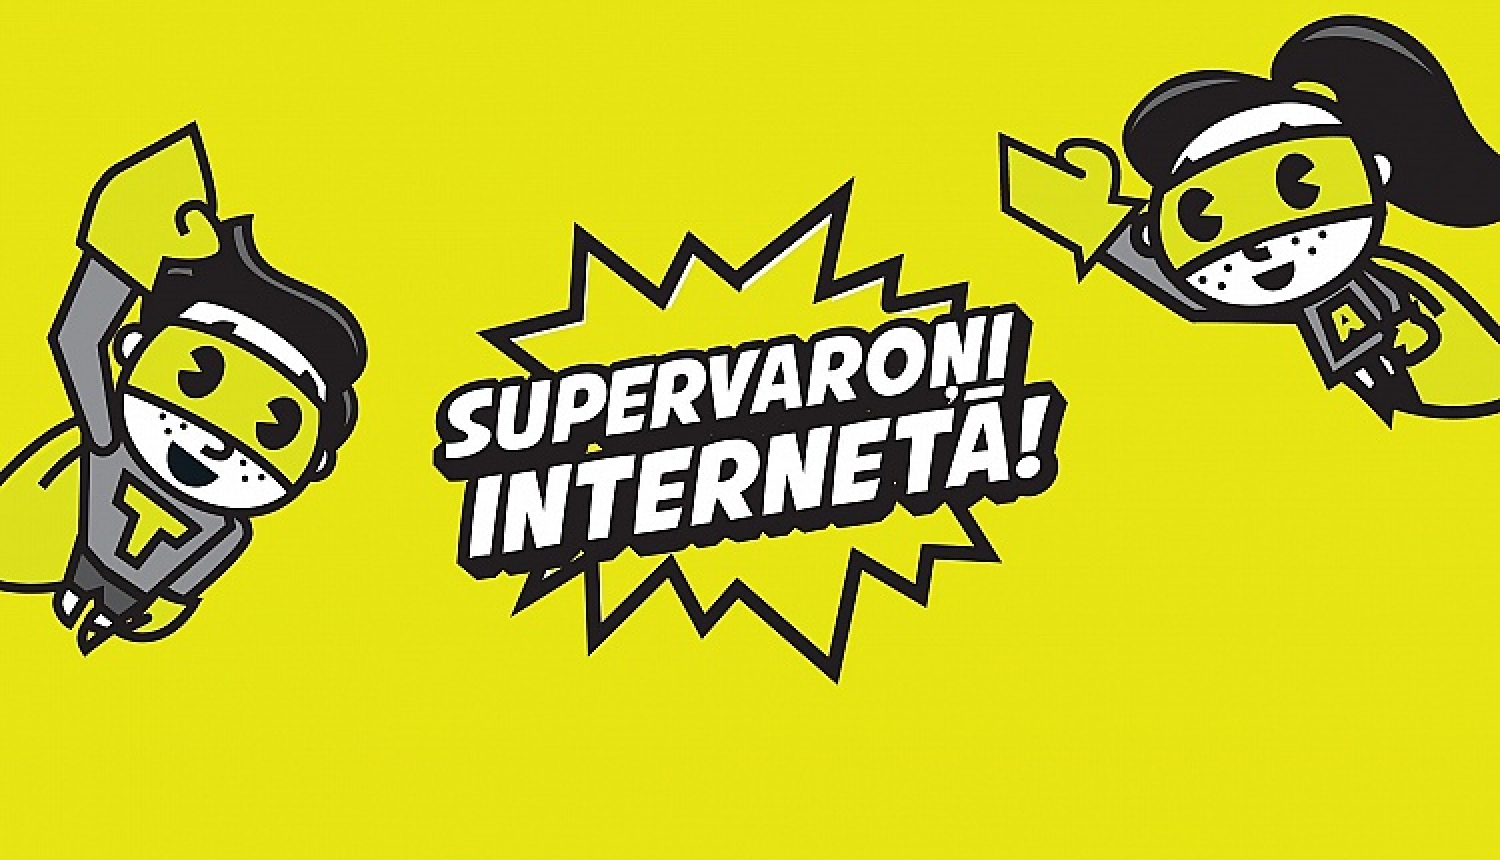 Atklās medijpratības un bērnu drošības internetā kampaņu “Supervaroņi internetā”